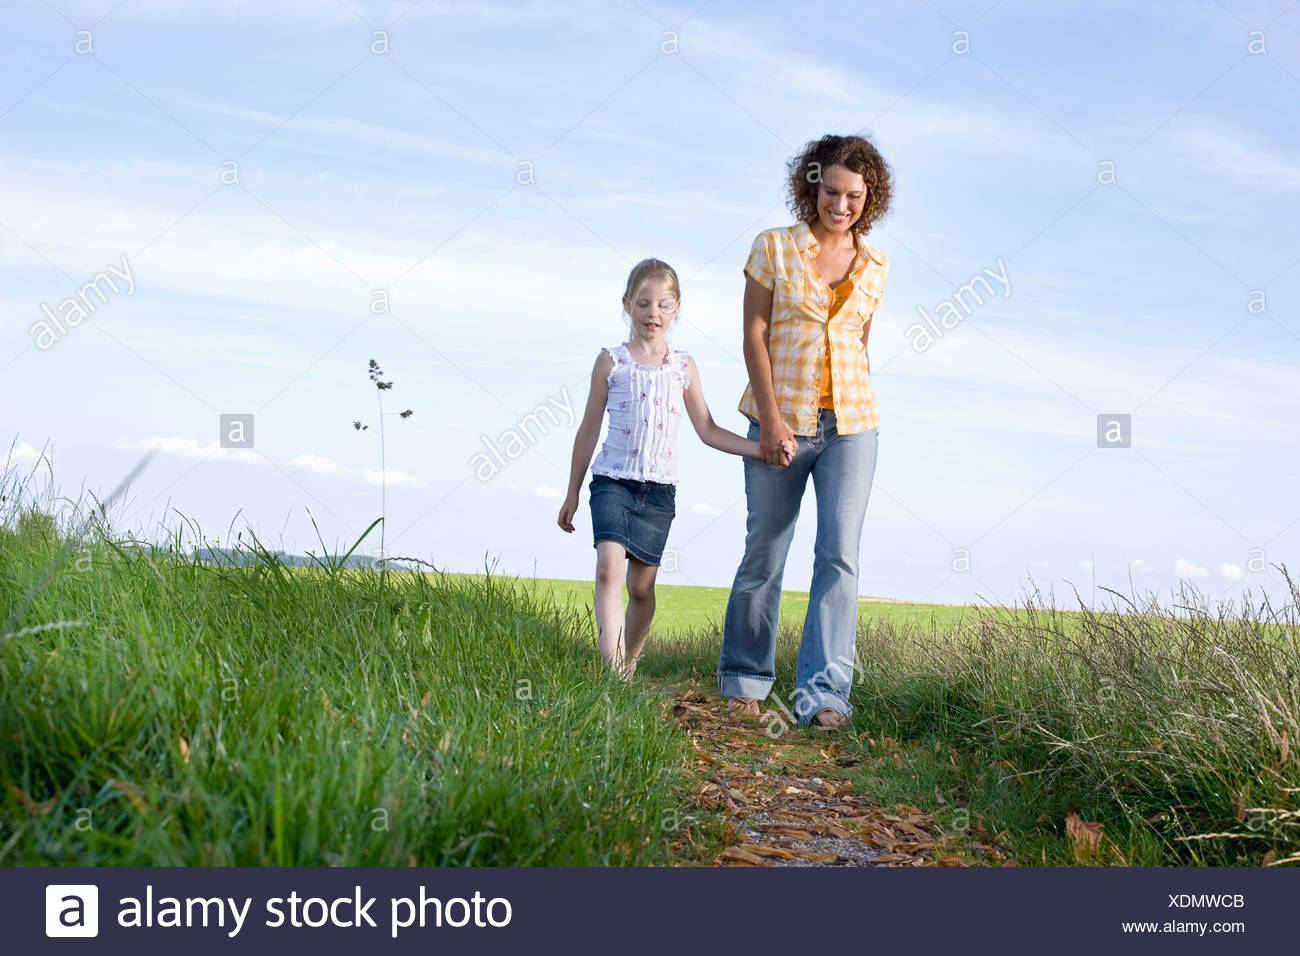 Giovane Madre E Figlia Camminando Mano Nella Mano Sul Percorso In Campagna Foto Stock Alamy